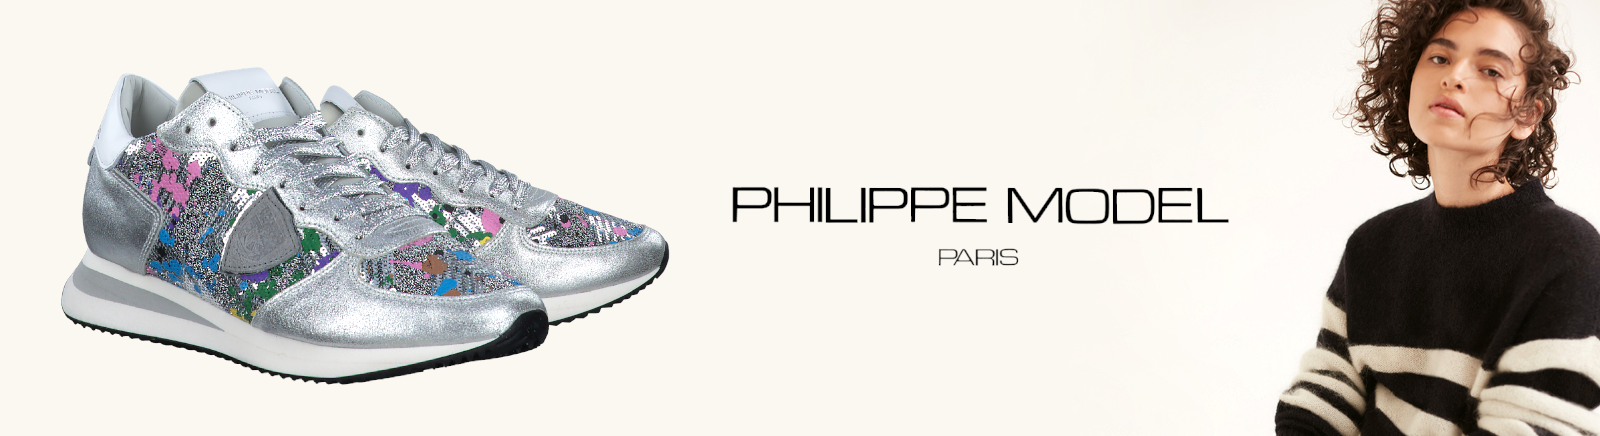 PHILIPPE MODEL Schuhe für Damen bestellen im Juppen Shop